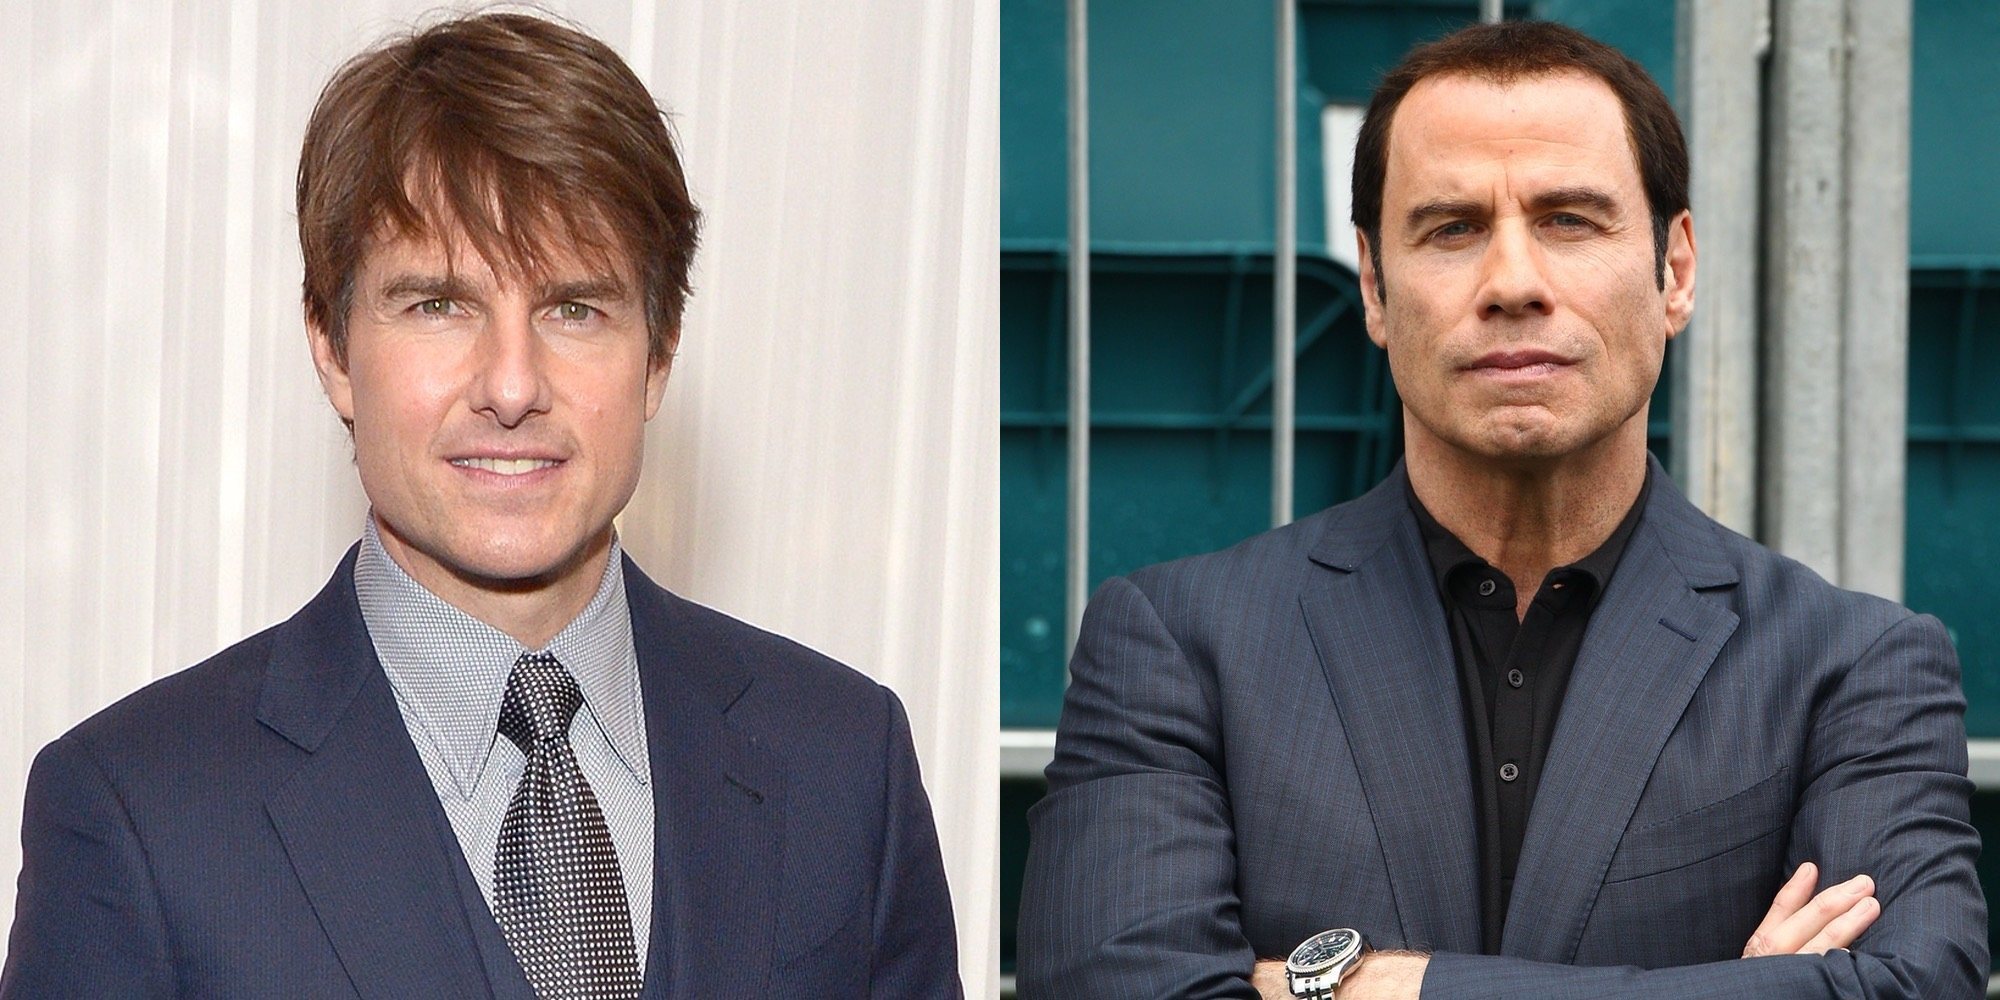 Tom Cruise y John Travolta, enfrentados por alcanzar el liderazgo en la Cienciología